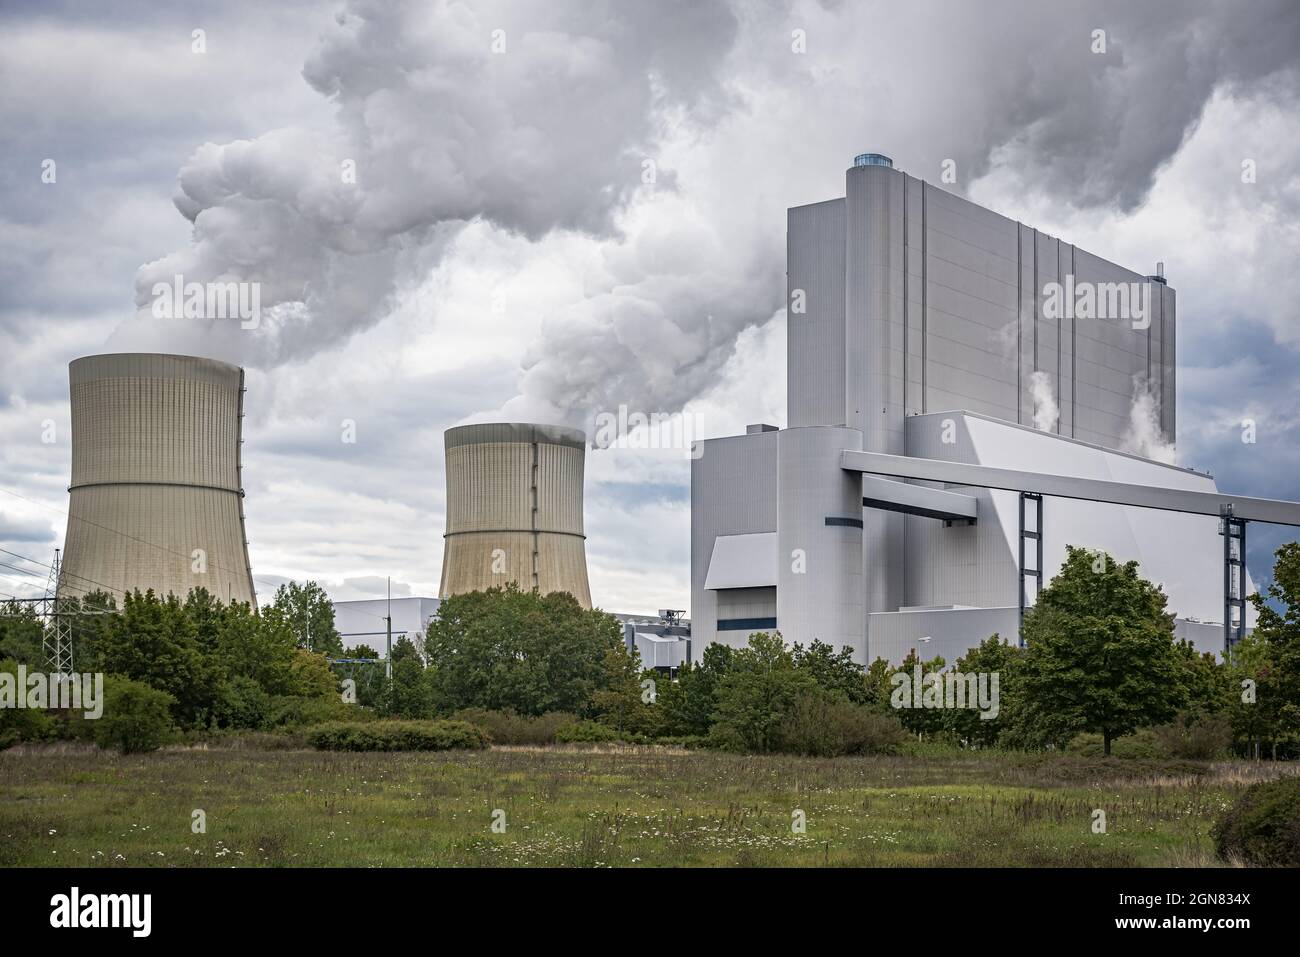 Schwarze Pumpe power plant in Germany Stock Photo